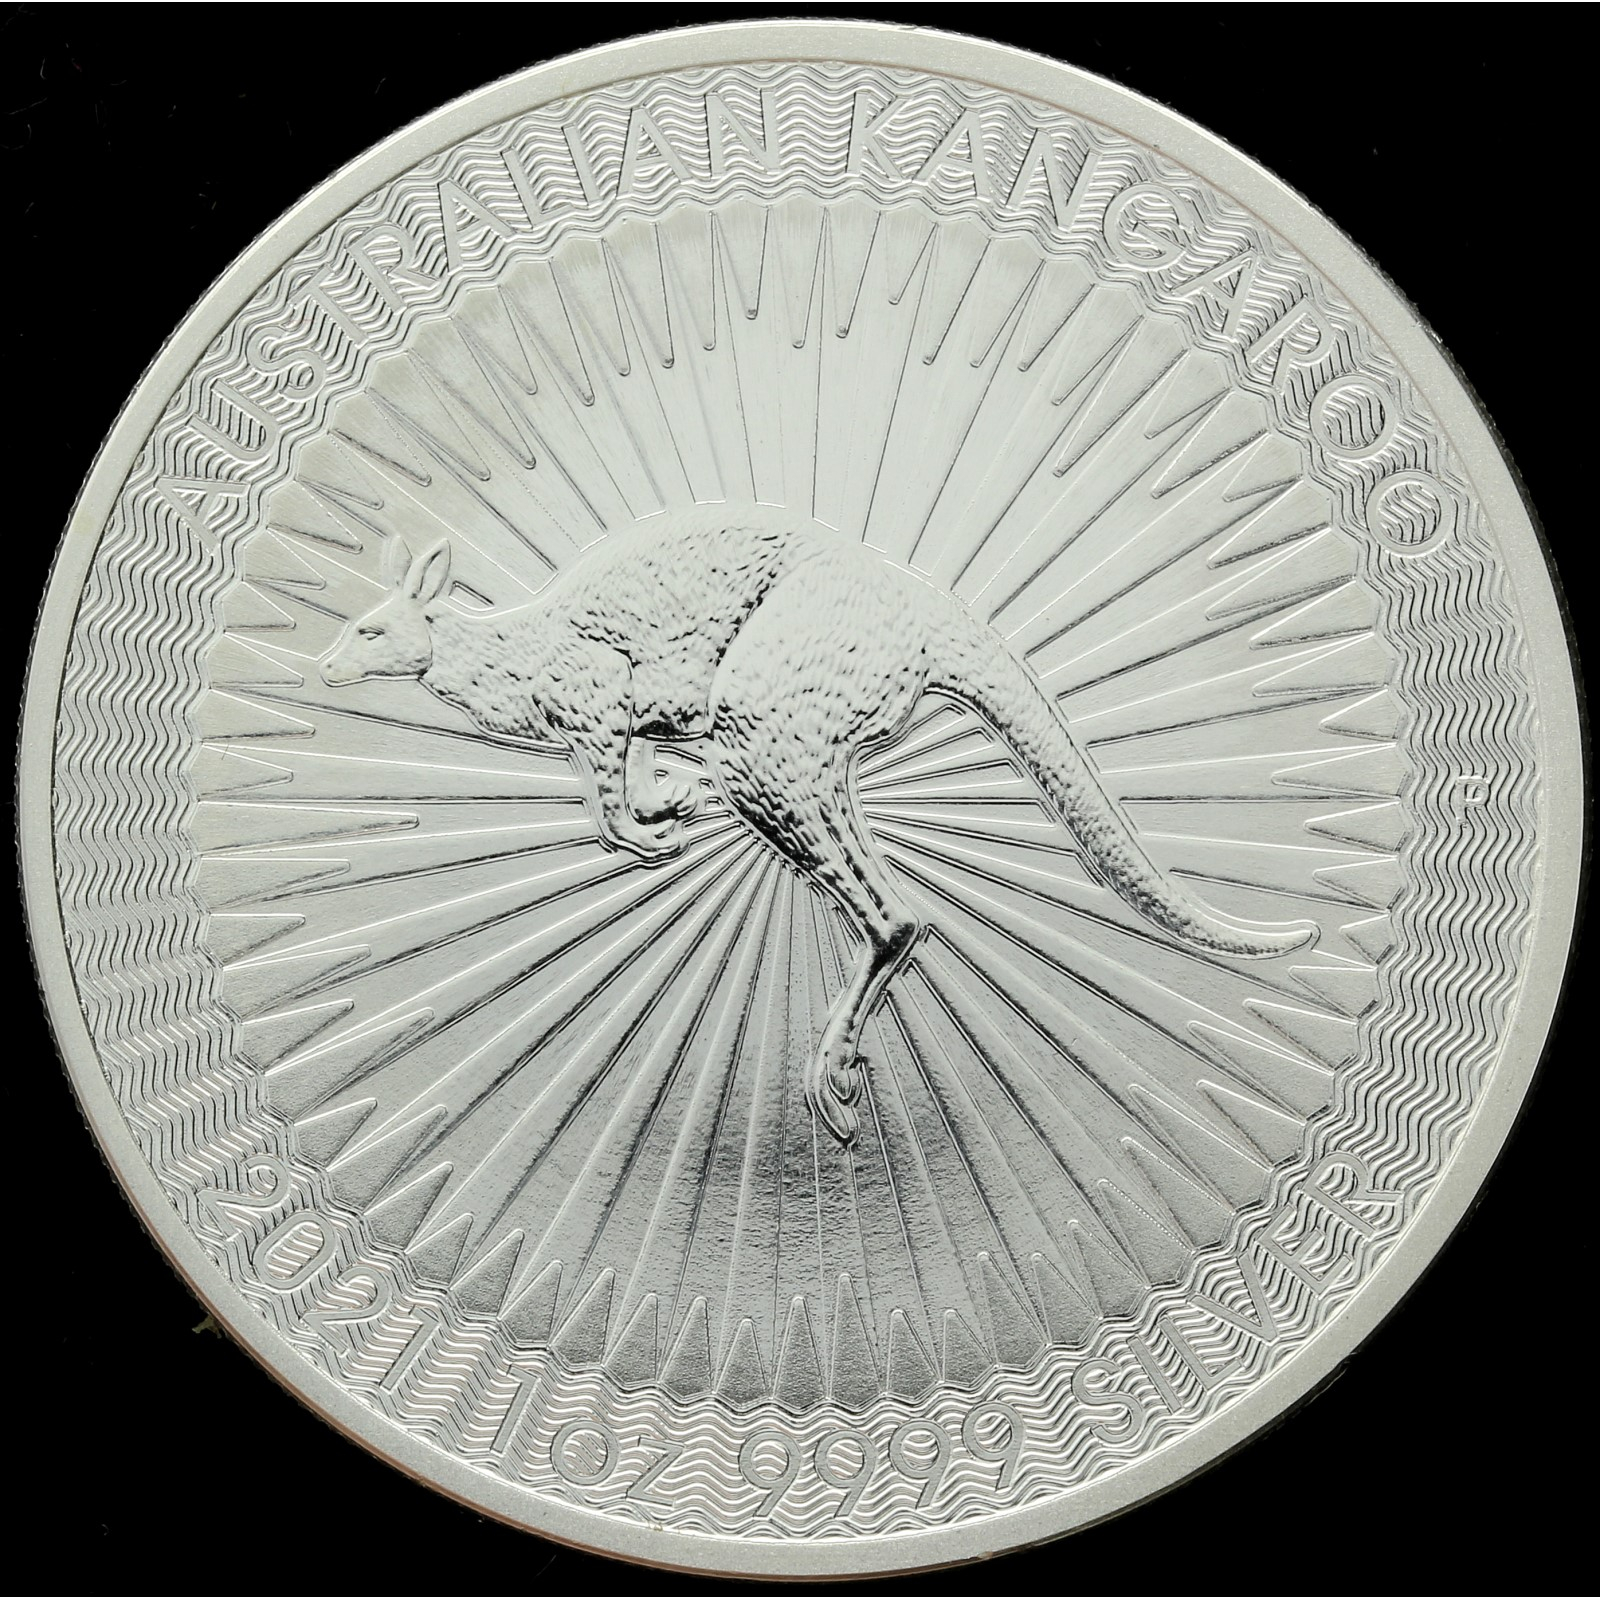 Australia - 1 dollar - 2022 - Kangaroo - 1oz silver - 25 coins